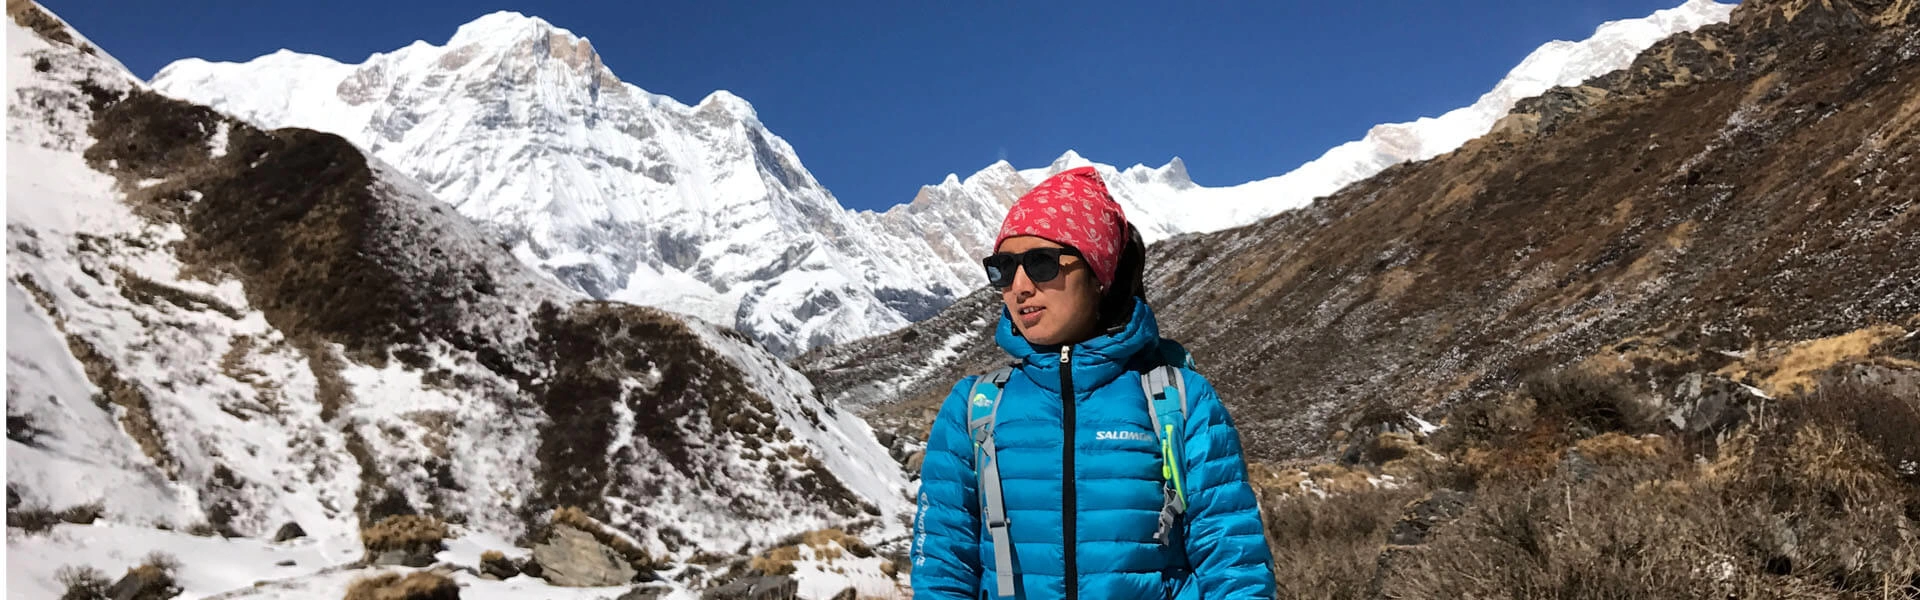 Female Trekking Guide in Nepal